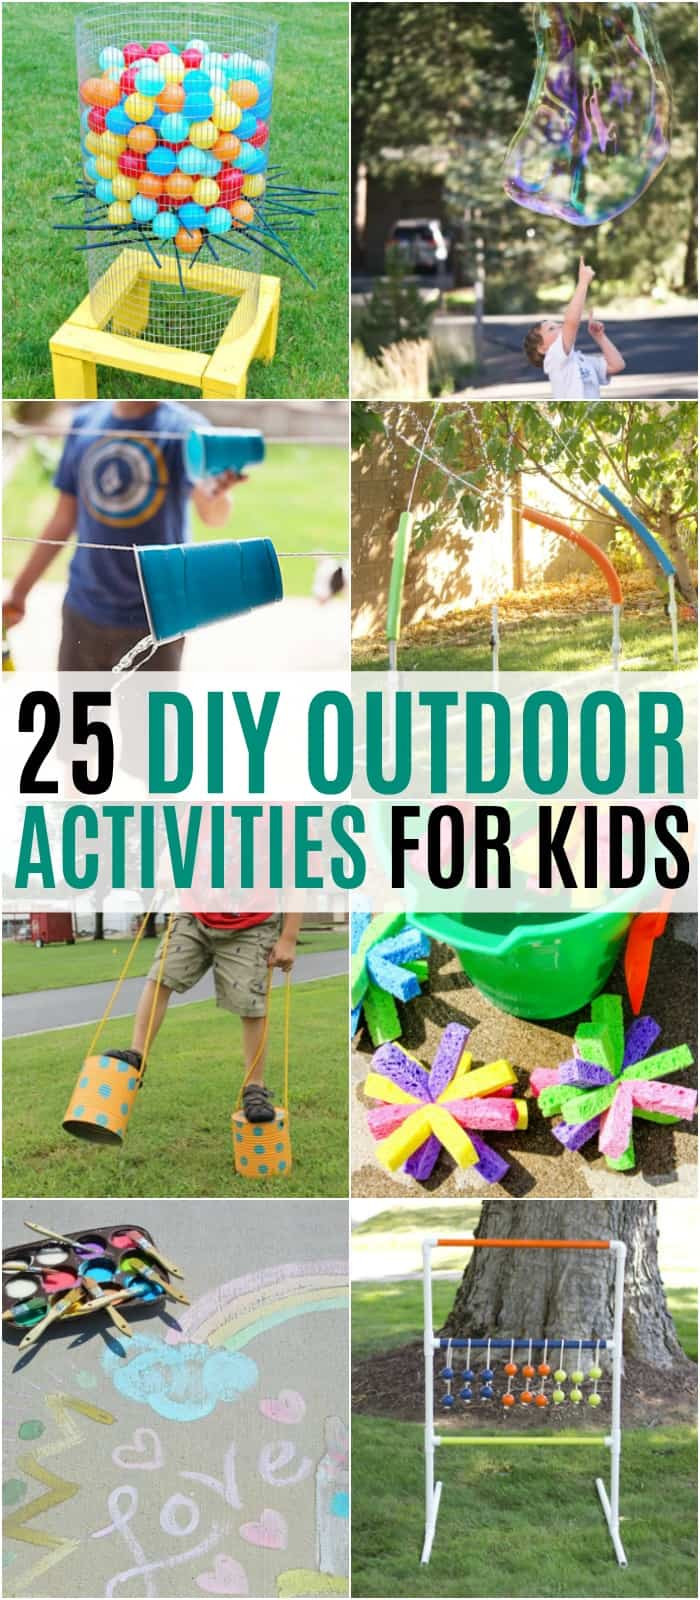 Outdoor Fun For Kids
 25 DIY Outdoor Activities for Kids ⋆ Real Housemoms